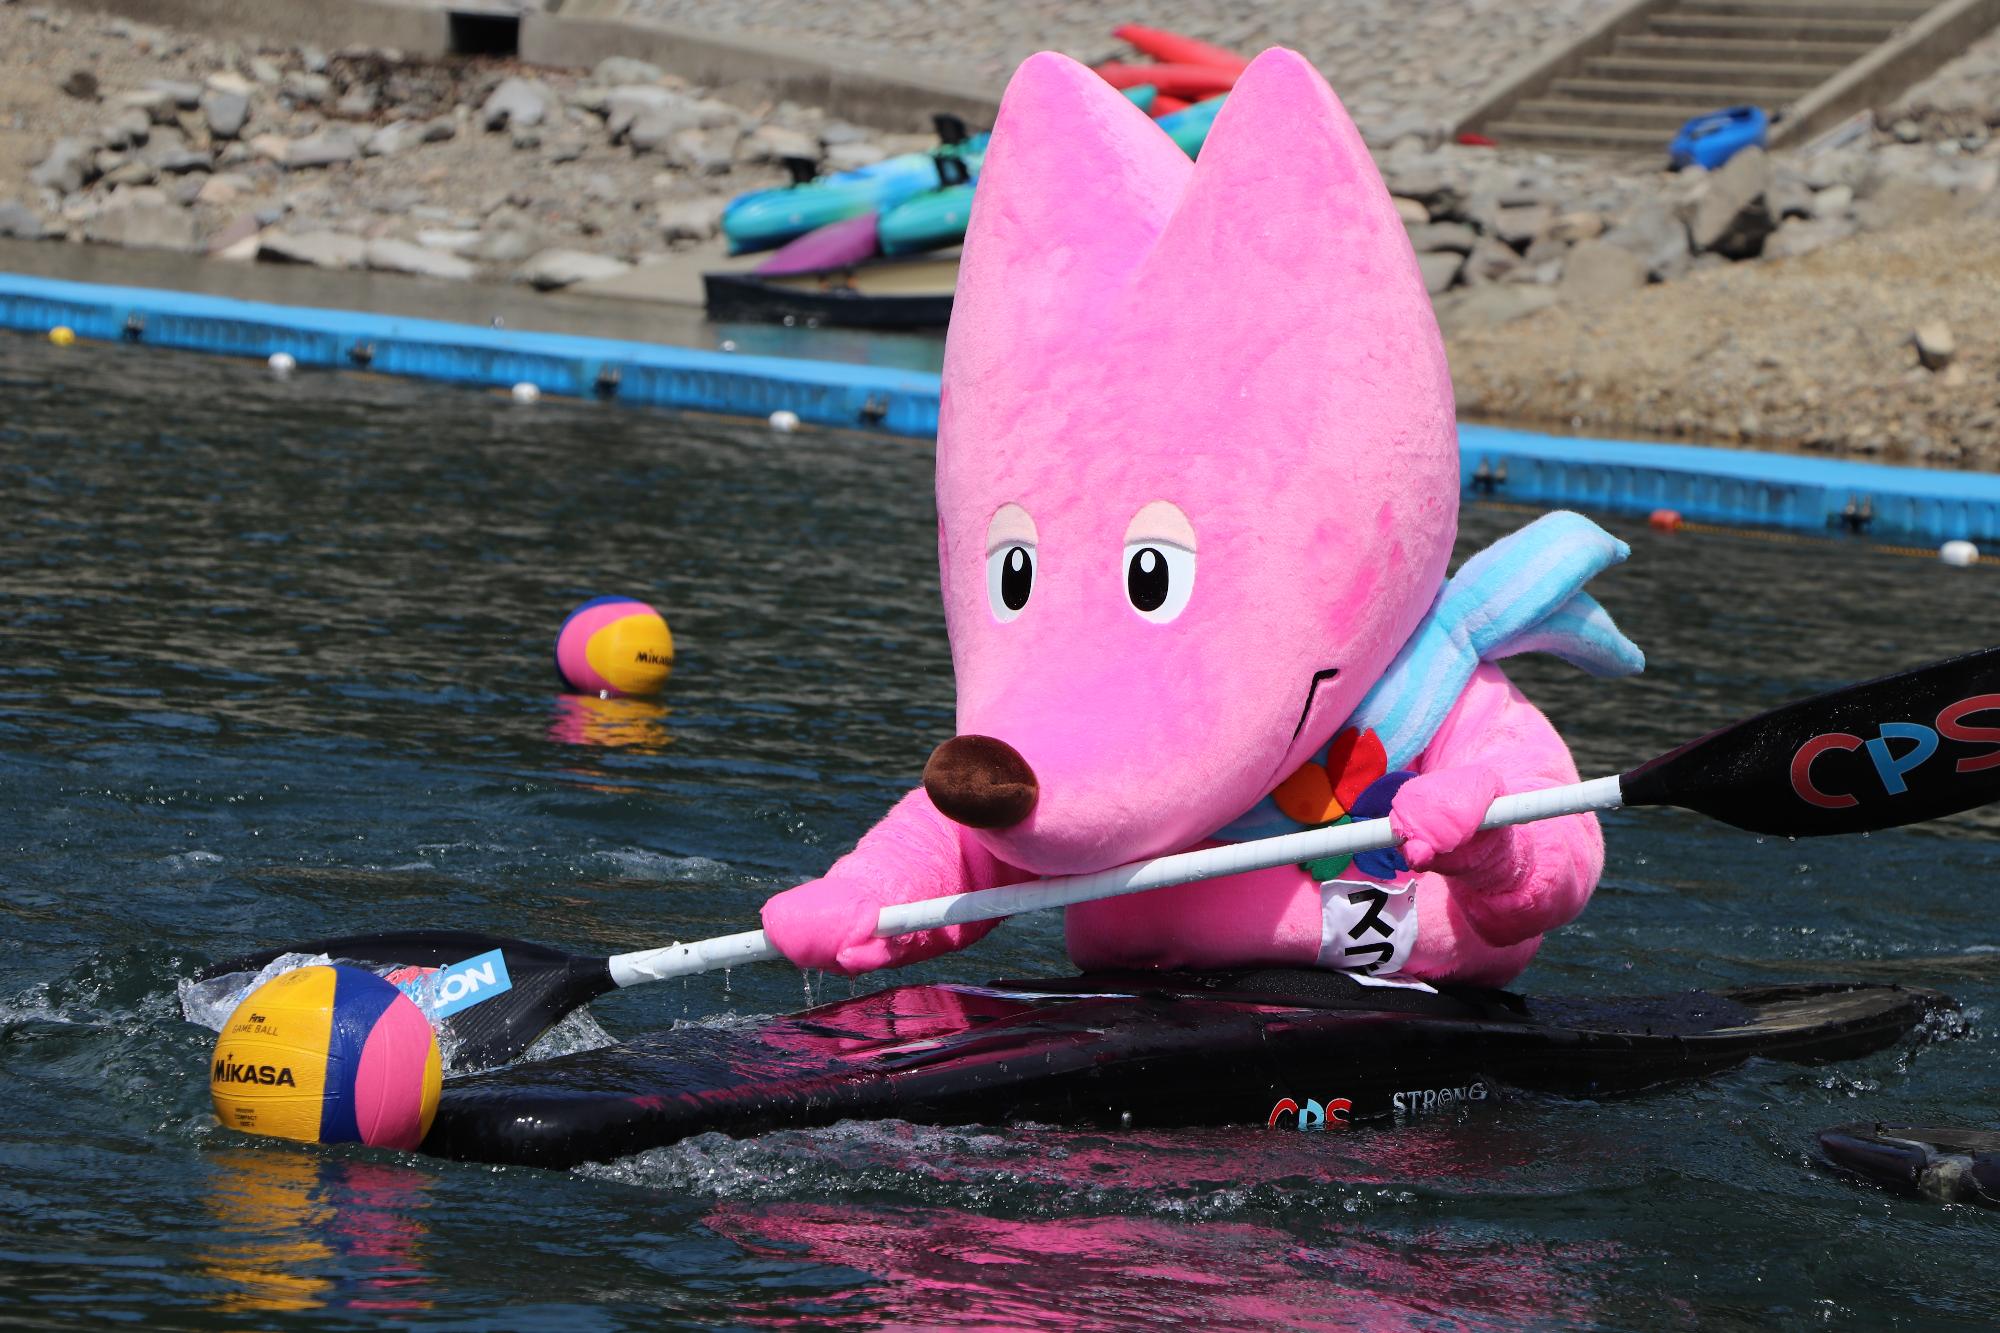 カヌーに乗り水上で巧みにボールを操るマスコットキャラクターのスフラの写真